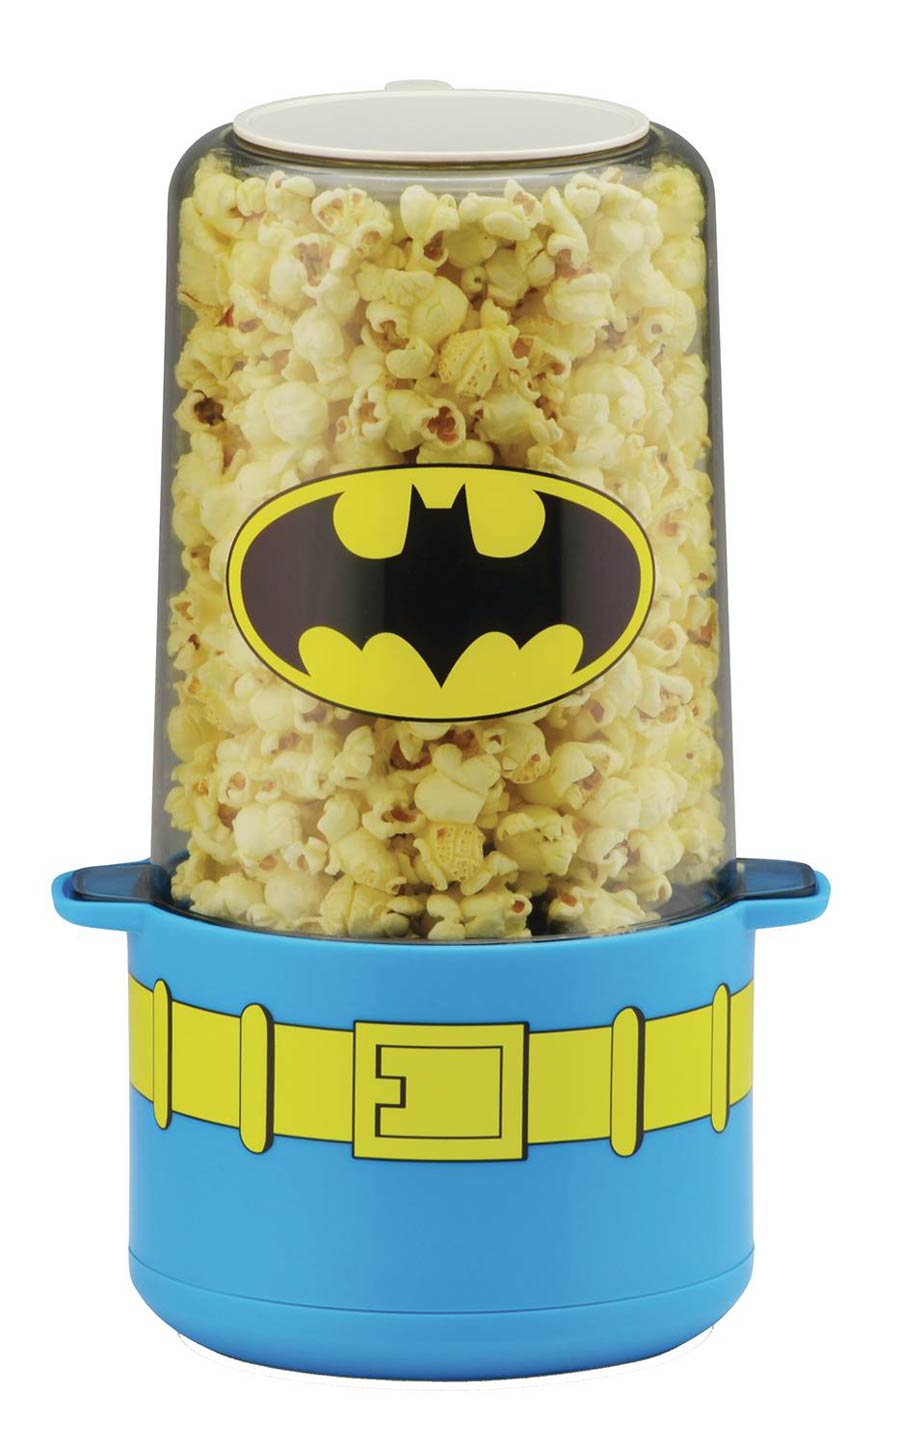 DC Comics Mini Popcorn Popper - Batman